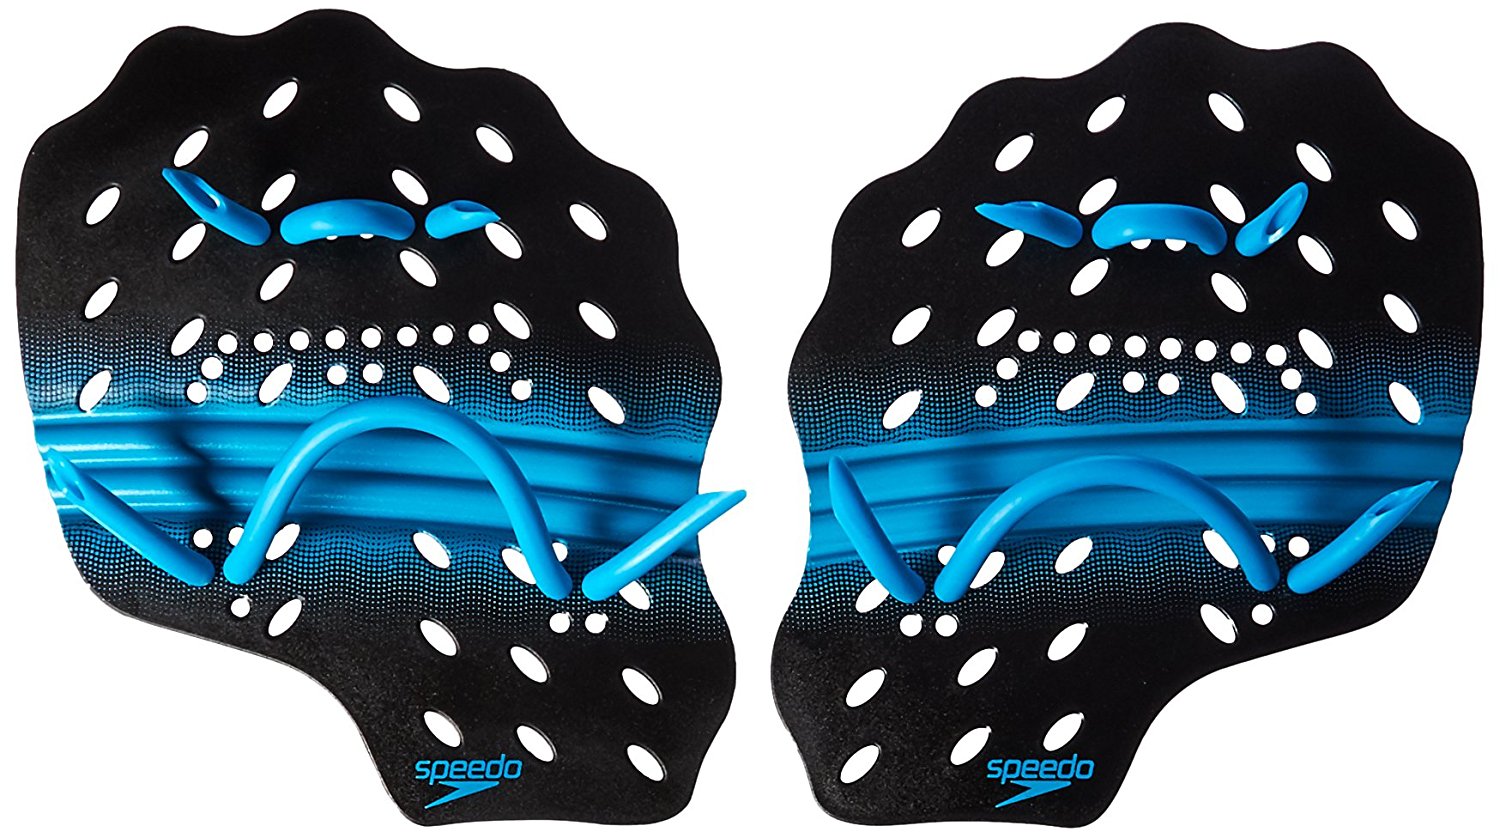 Swimtonic - Las palas de natación Swimtonic One constan de un diseño  ergonómico concebido después de un arduo estudio hidrodinámico para ganar  potencia y velocidad de nado. Testadas y recomendadas por Java